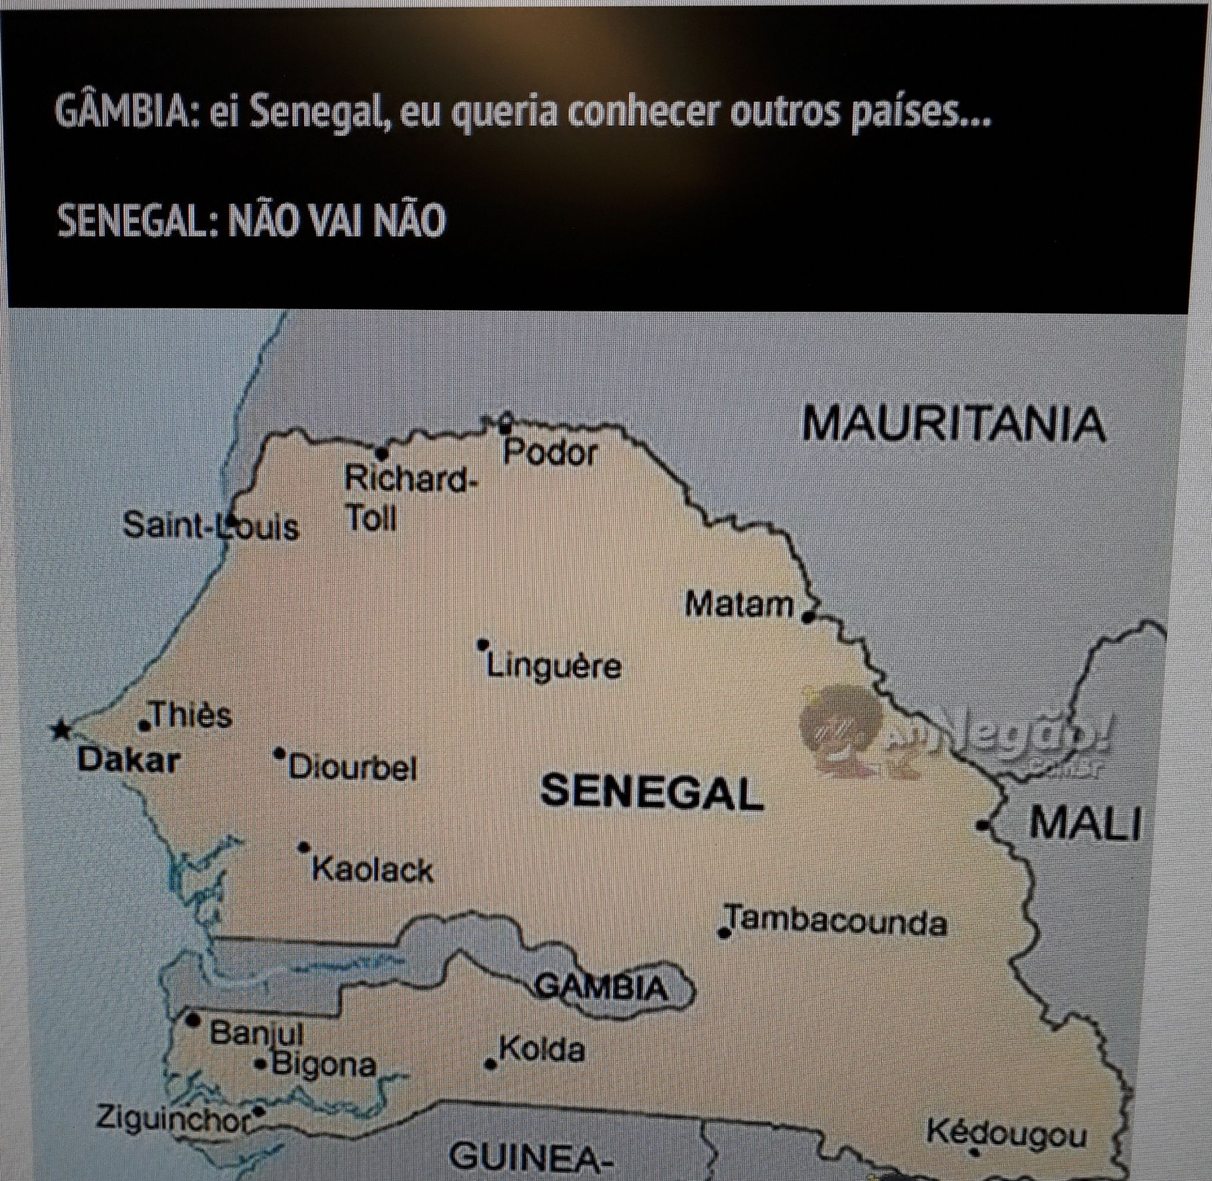 Não seja um Senegal - meme